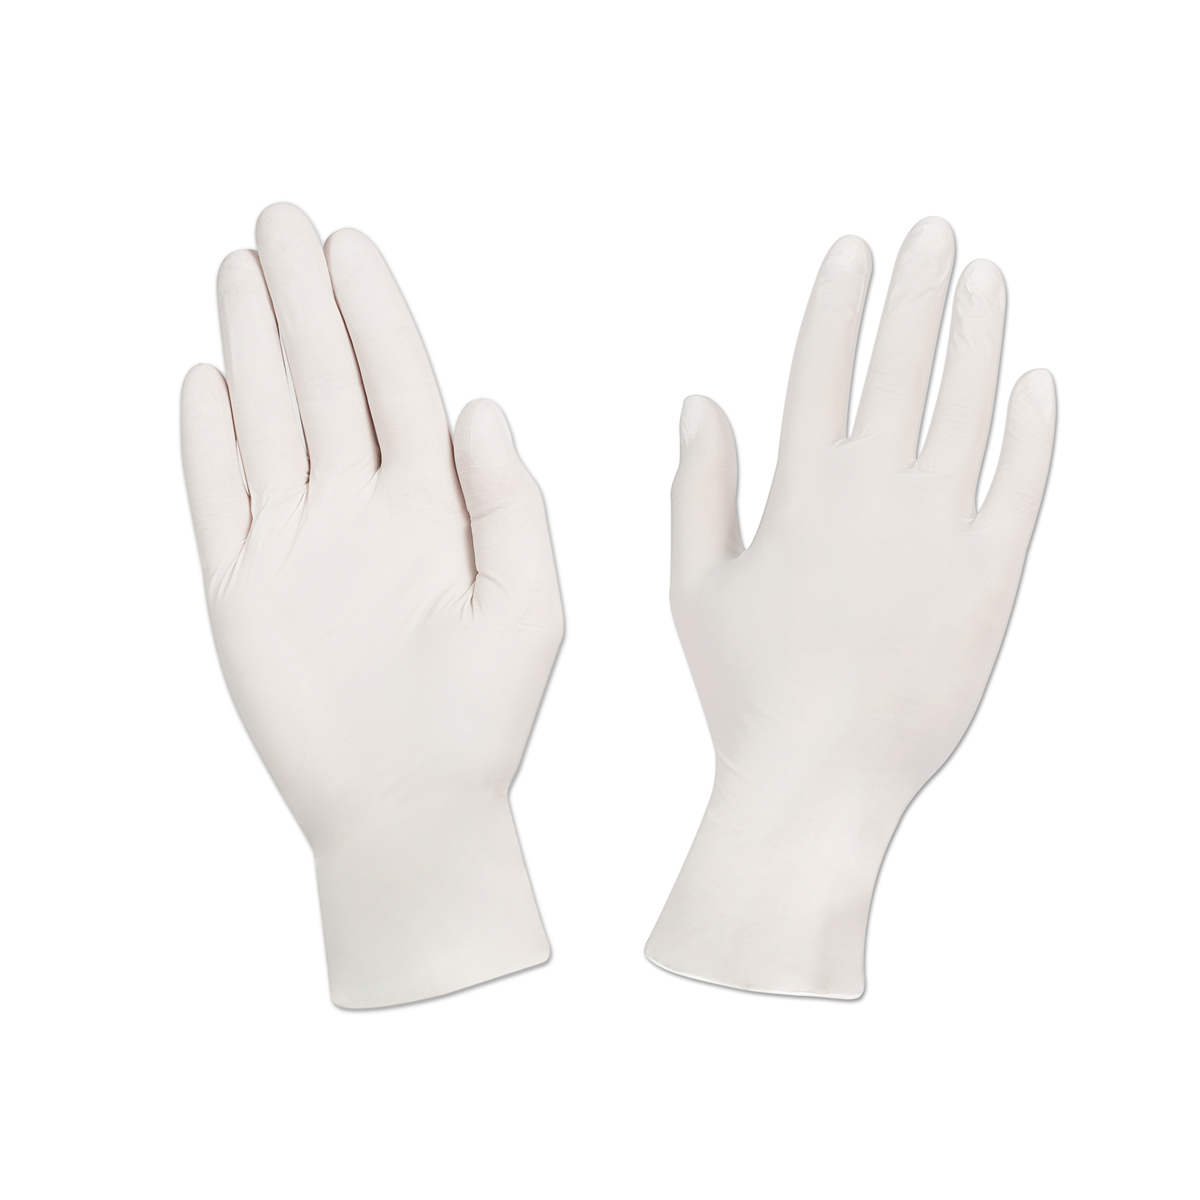  перчатки нитриловые текстурированные на пальцах s белые оптом .